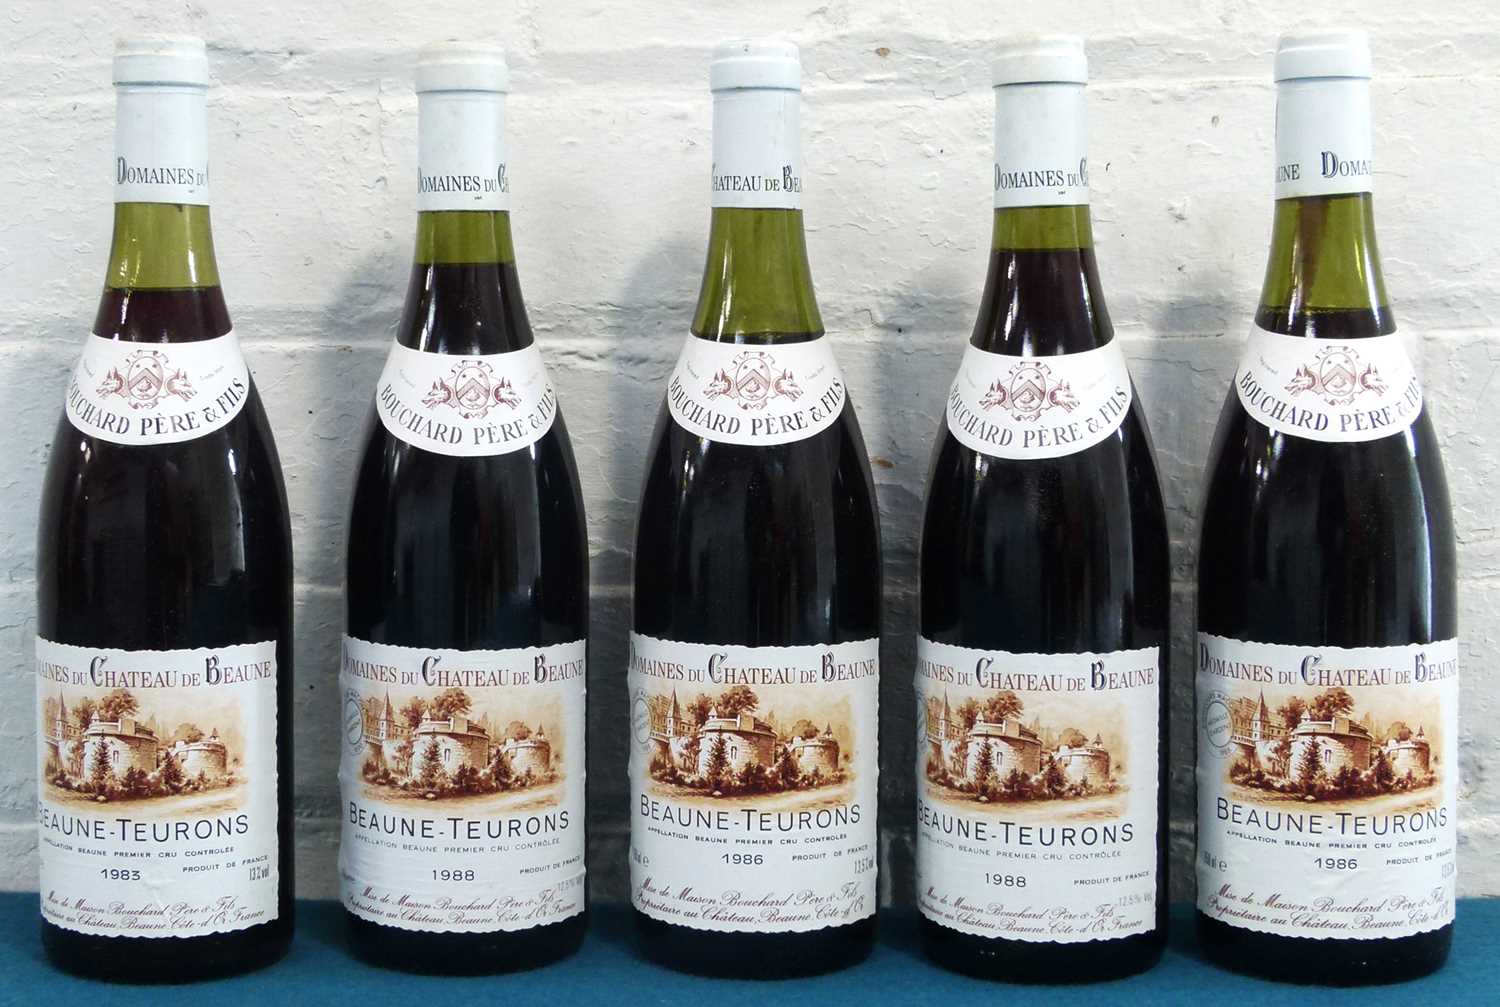 Lot 8 - 5 Bottles Mixed Lot Beaune-Teurons Premier Cru Domaines du Chateau de Beaune Bouchard Pere et Fils